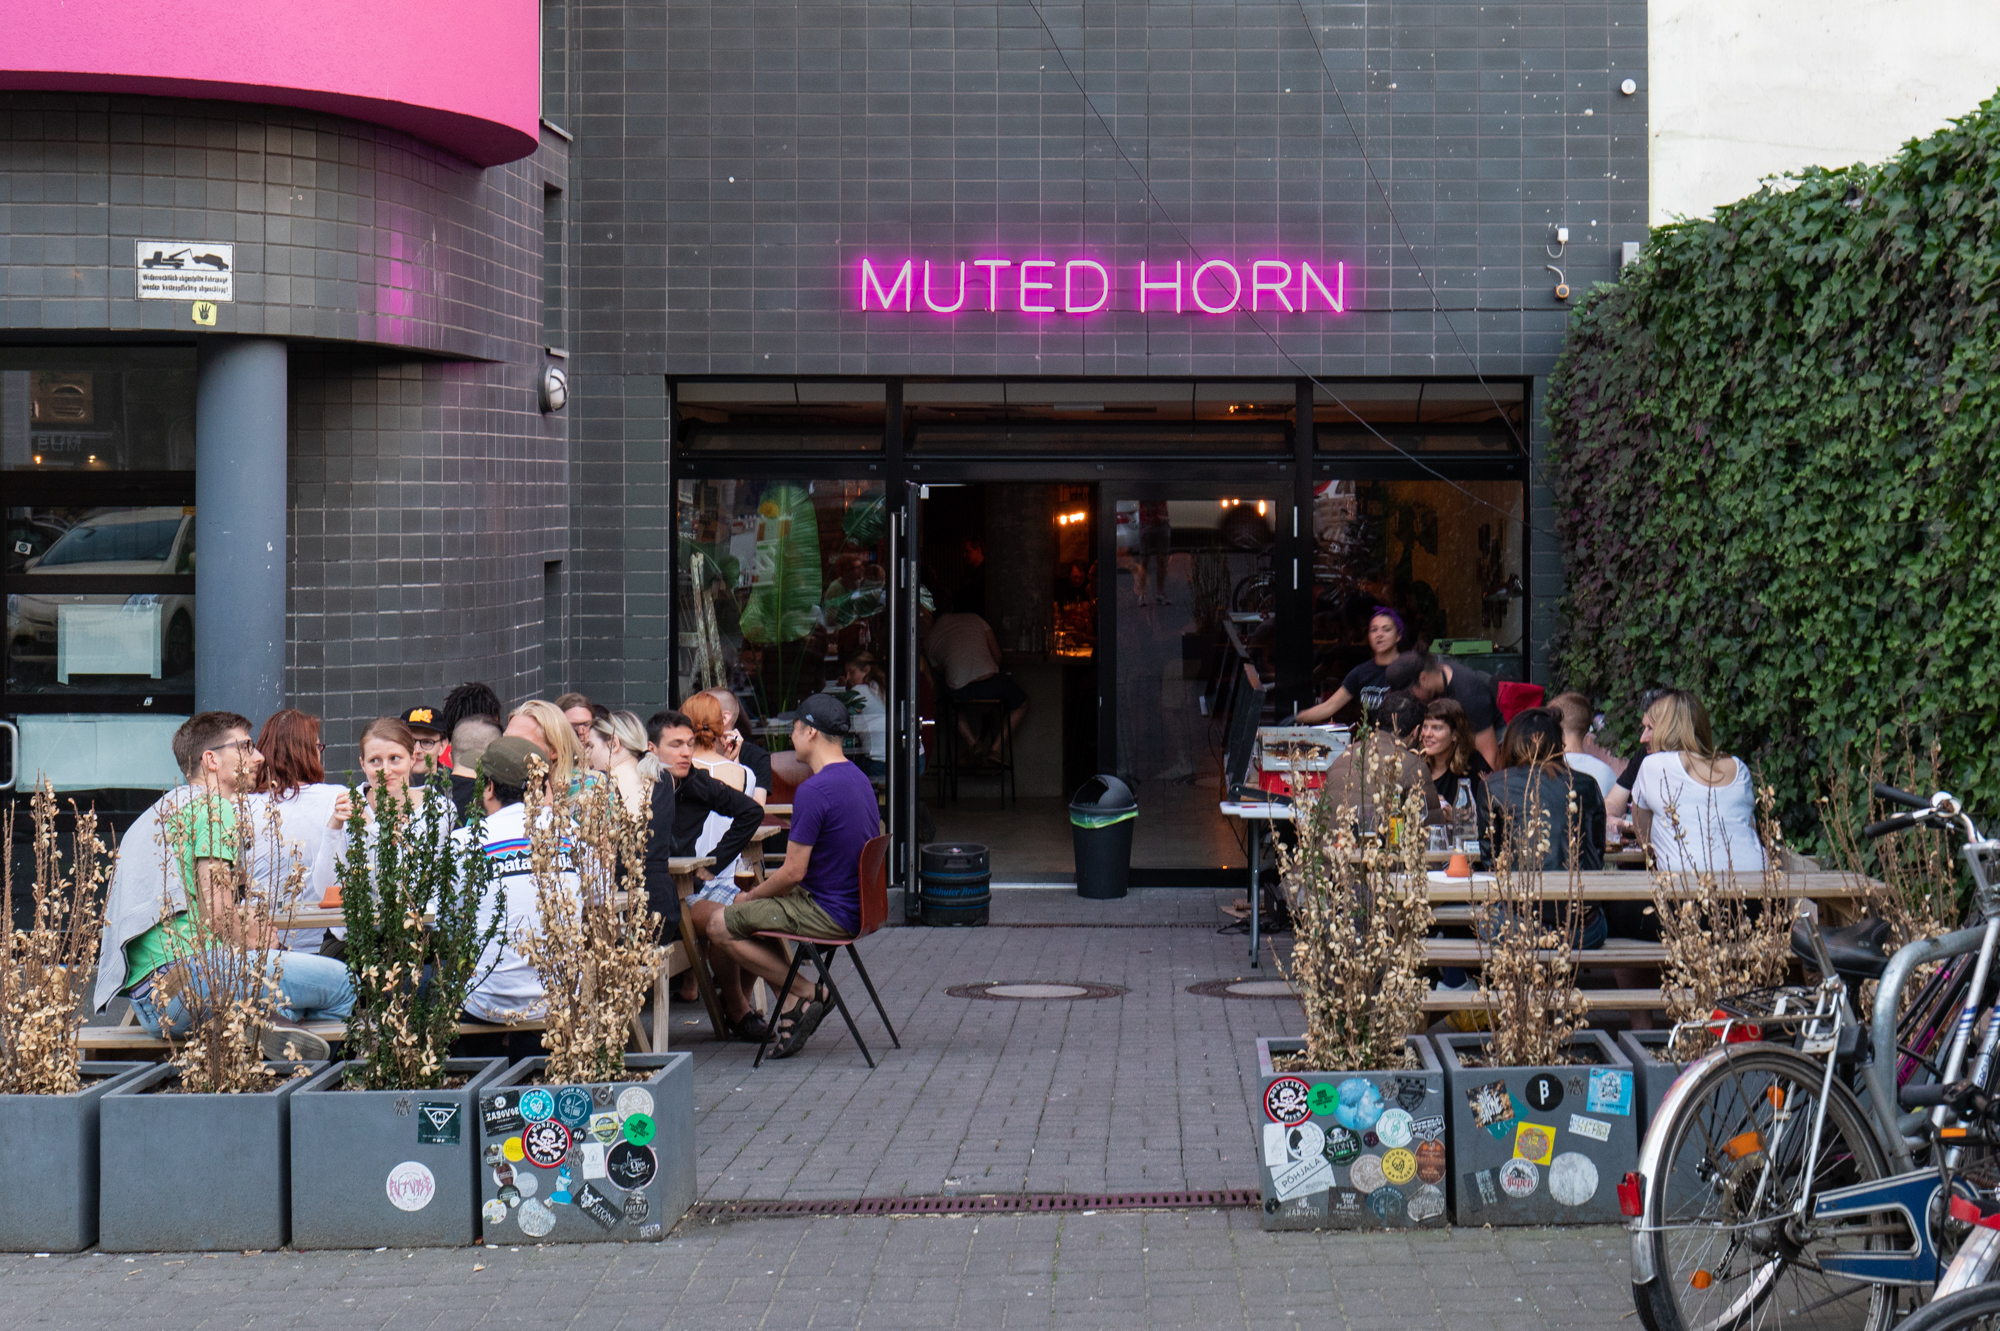 Muted Horn, a craft beer bar in Berlin Neukölln